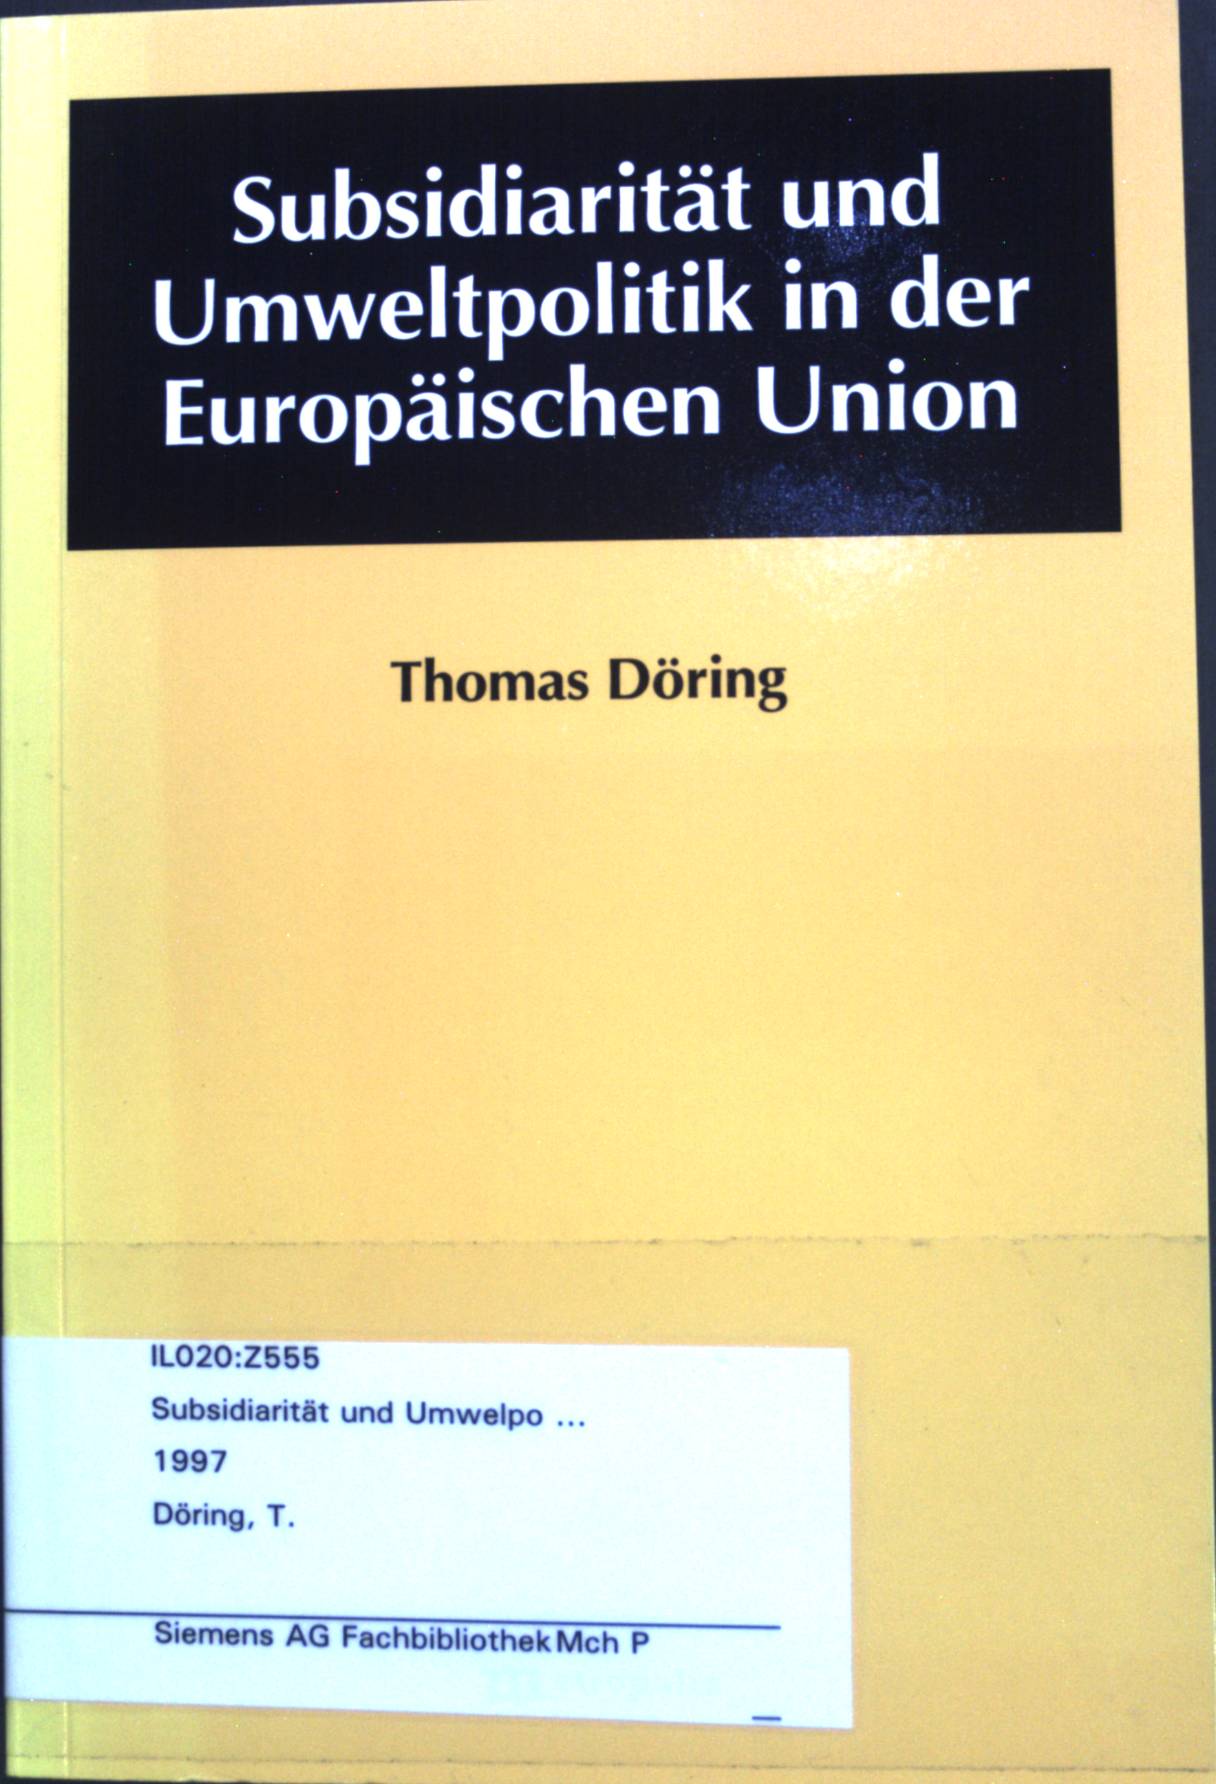 Subsidiarität und Umweltpolitik in der Europäischen Union. Ökologie und Wirtschaftsforschung; Band 25. - Döring, Thomas